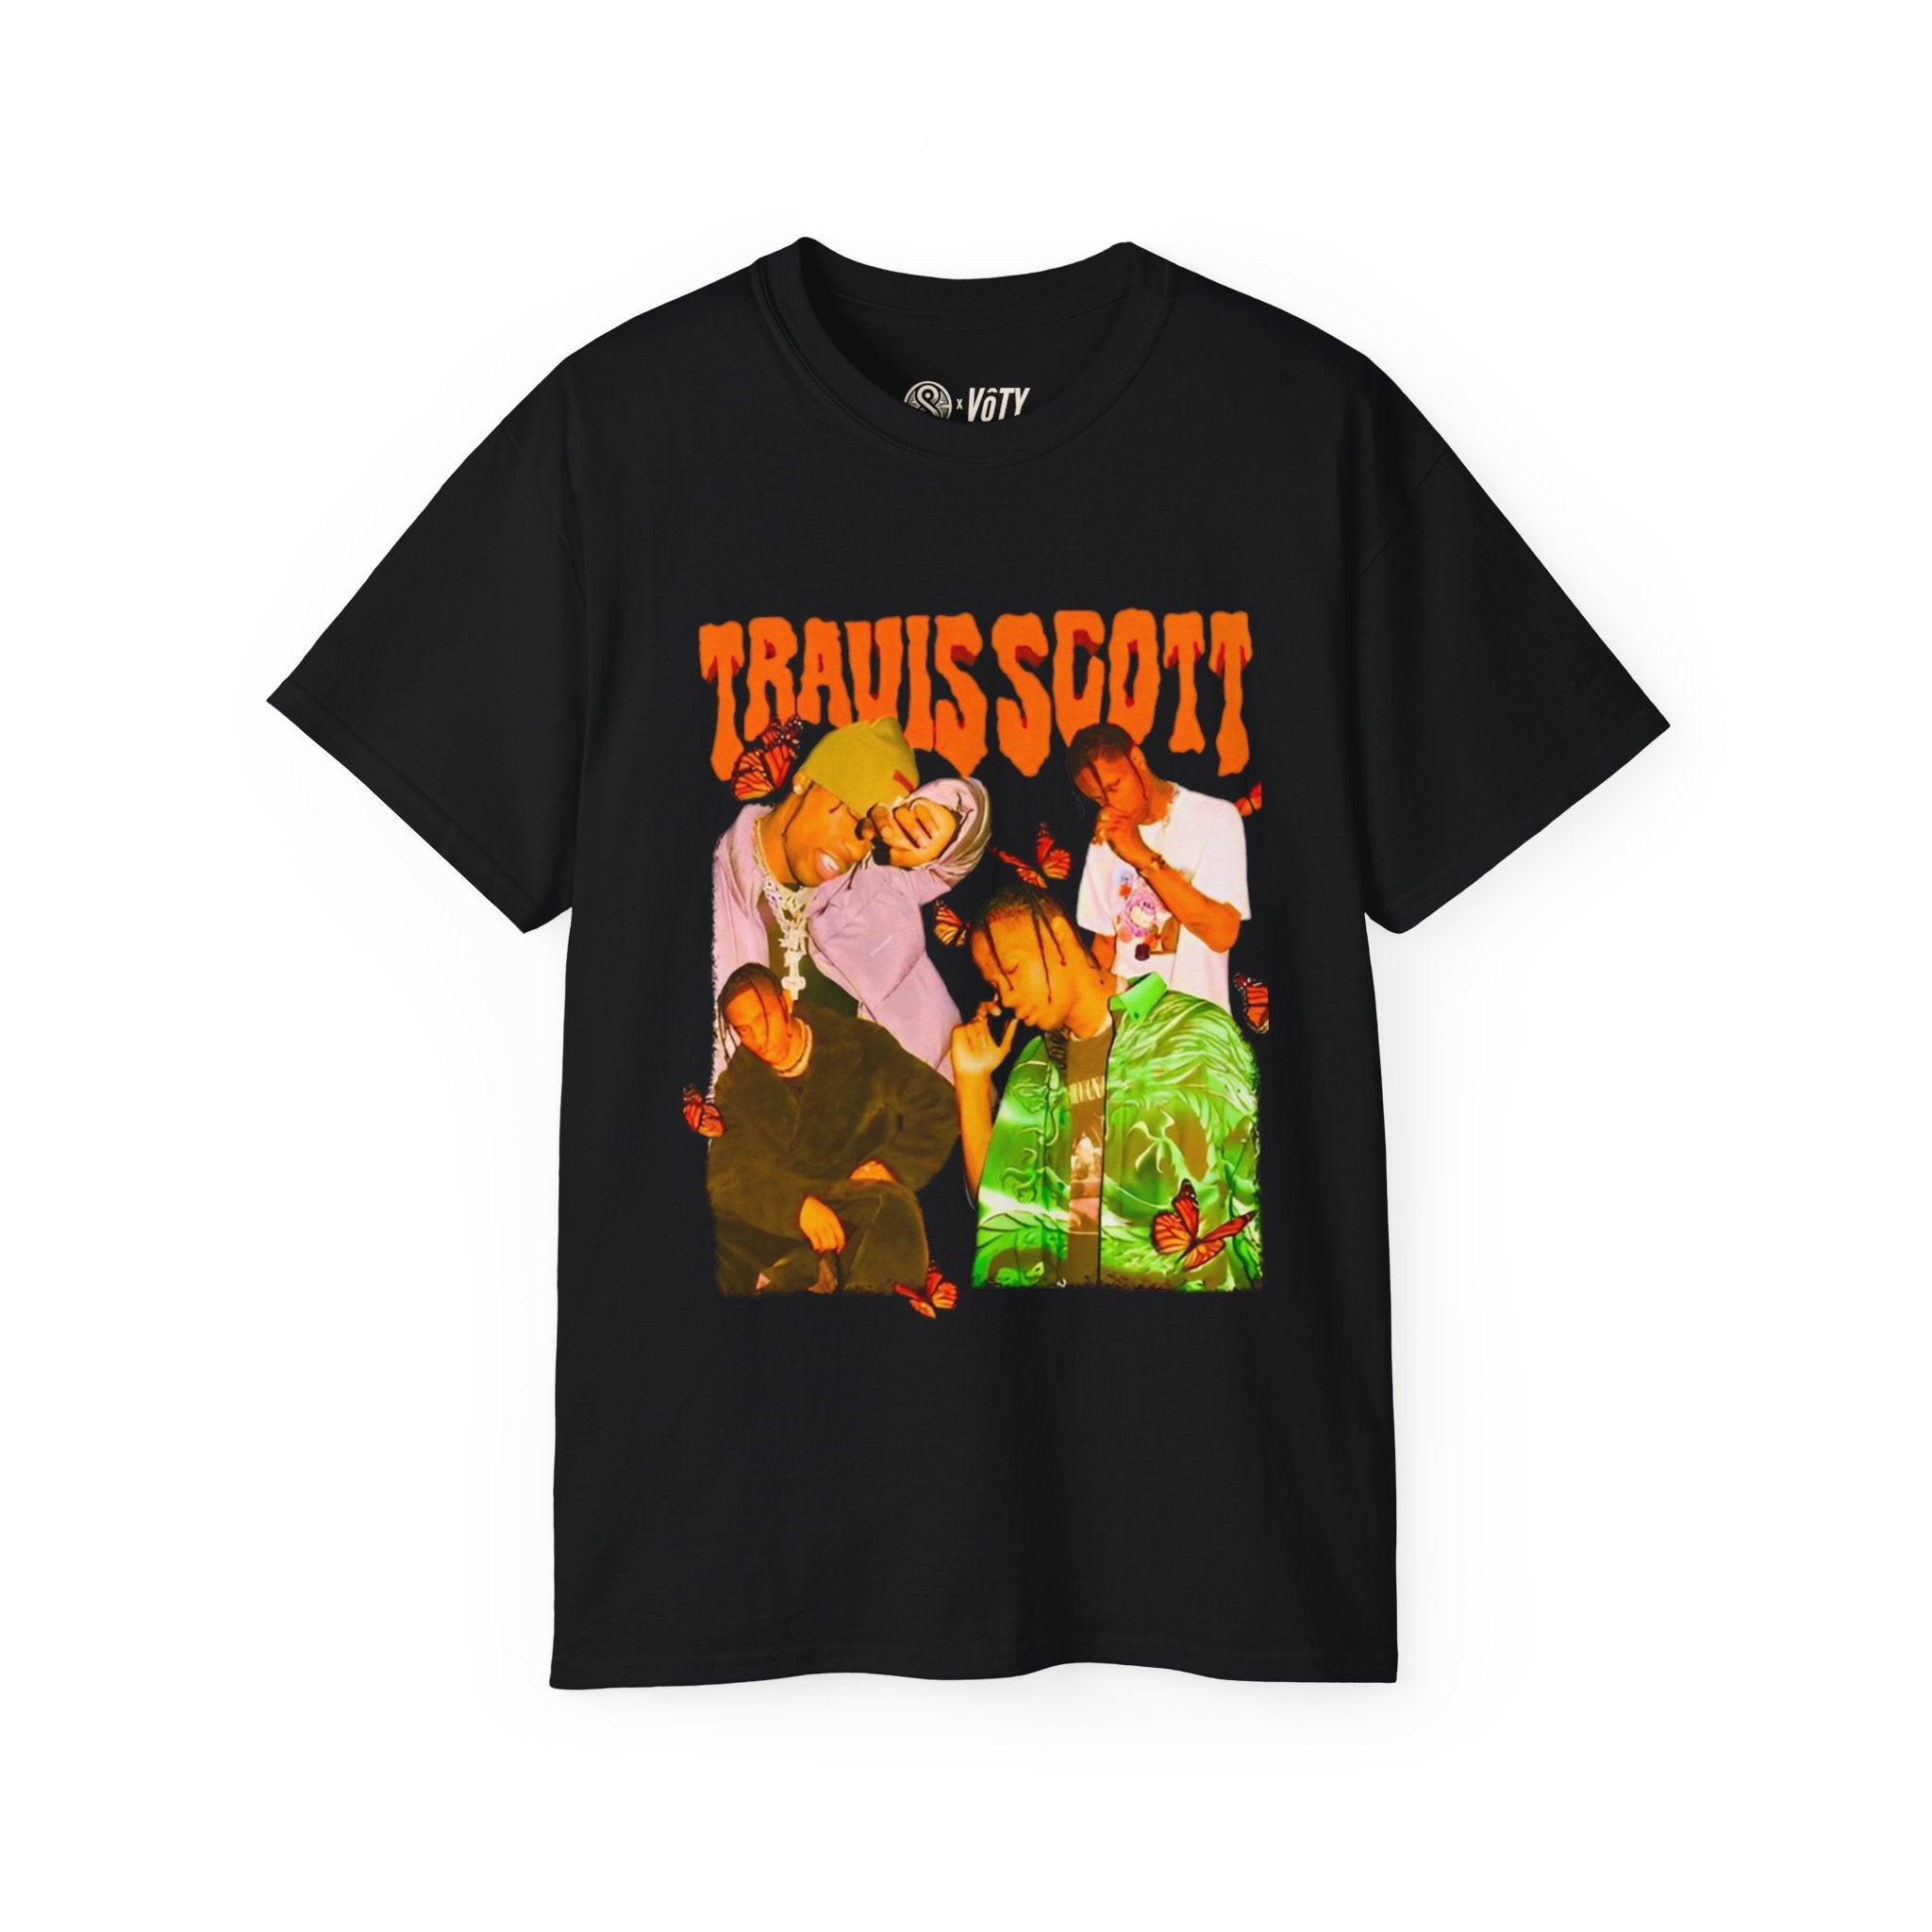 Travis Scott "Butterfly Effect" T-Shirt